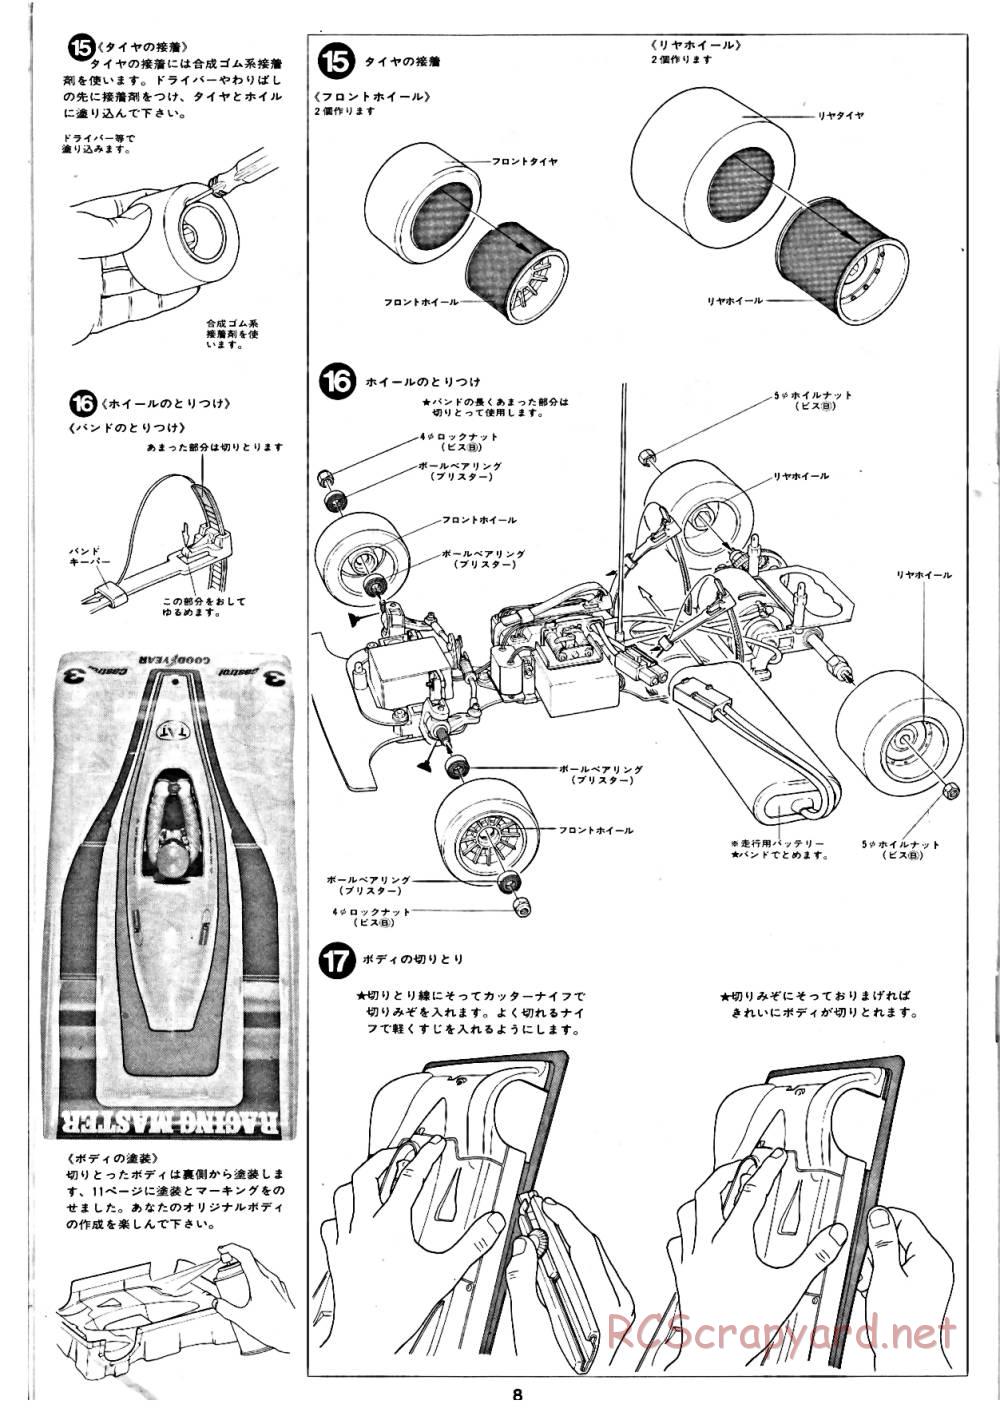 Tamiya - Tornado - RM MK.3 - 58032 - Manual - Page 8